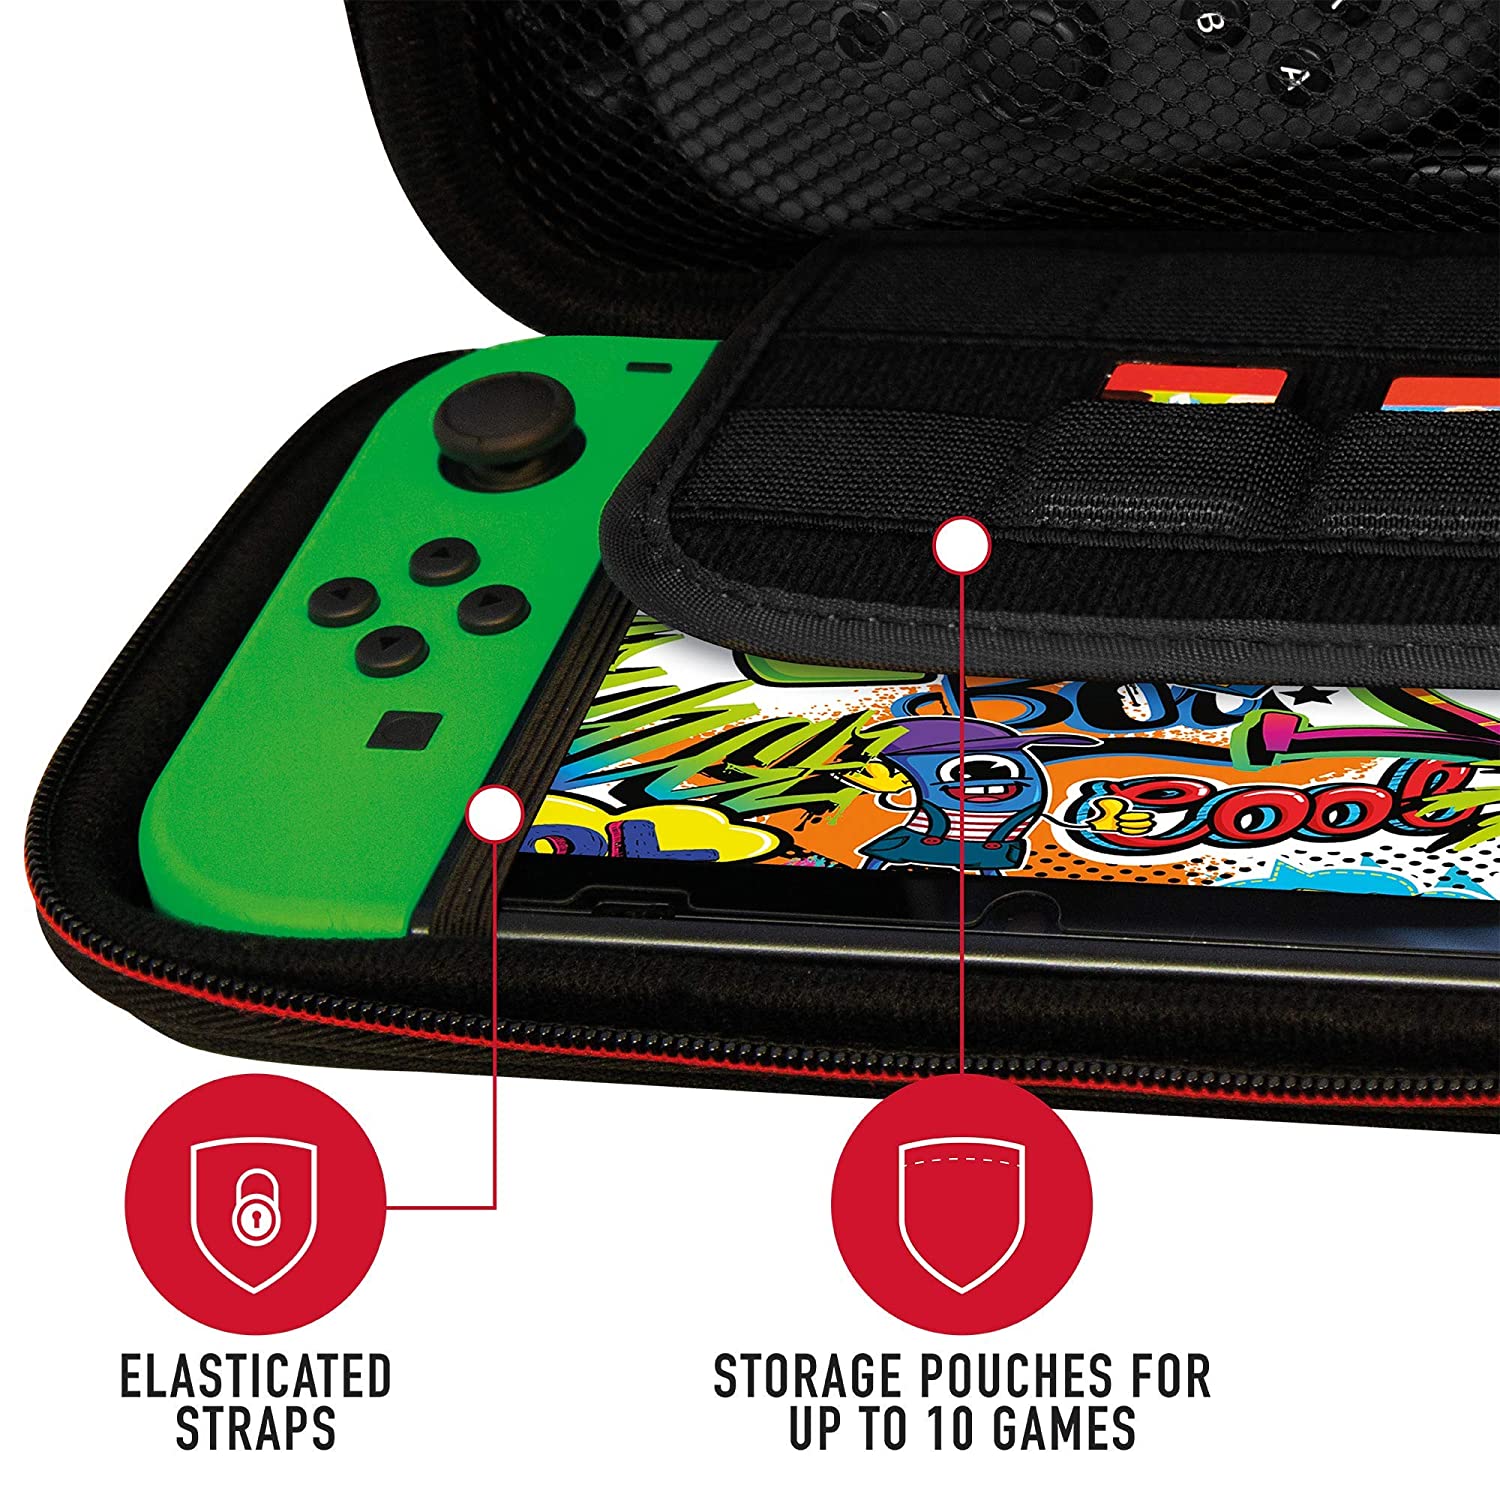 Stealth Premium Travel Case (Nintendo Switch / Switch Lite)